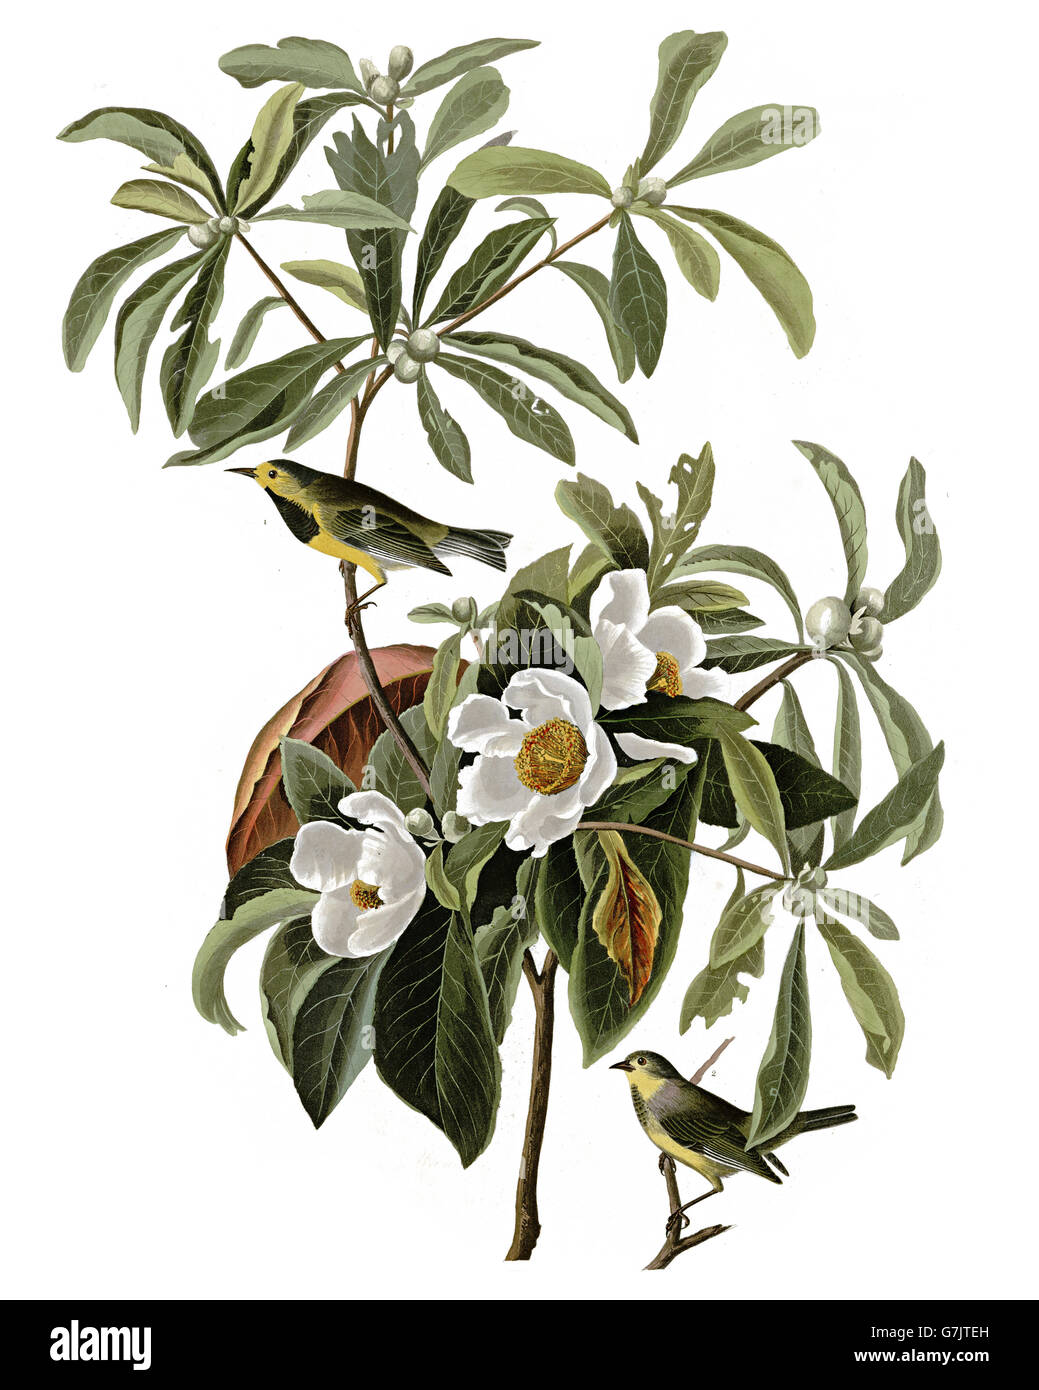 Bachman s Warbler, Vermivora bachmanii, birds, 1827 - 1838 Stock Photo